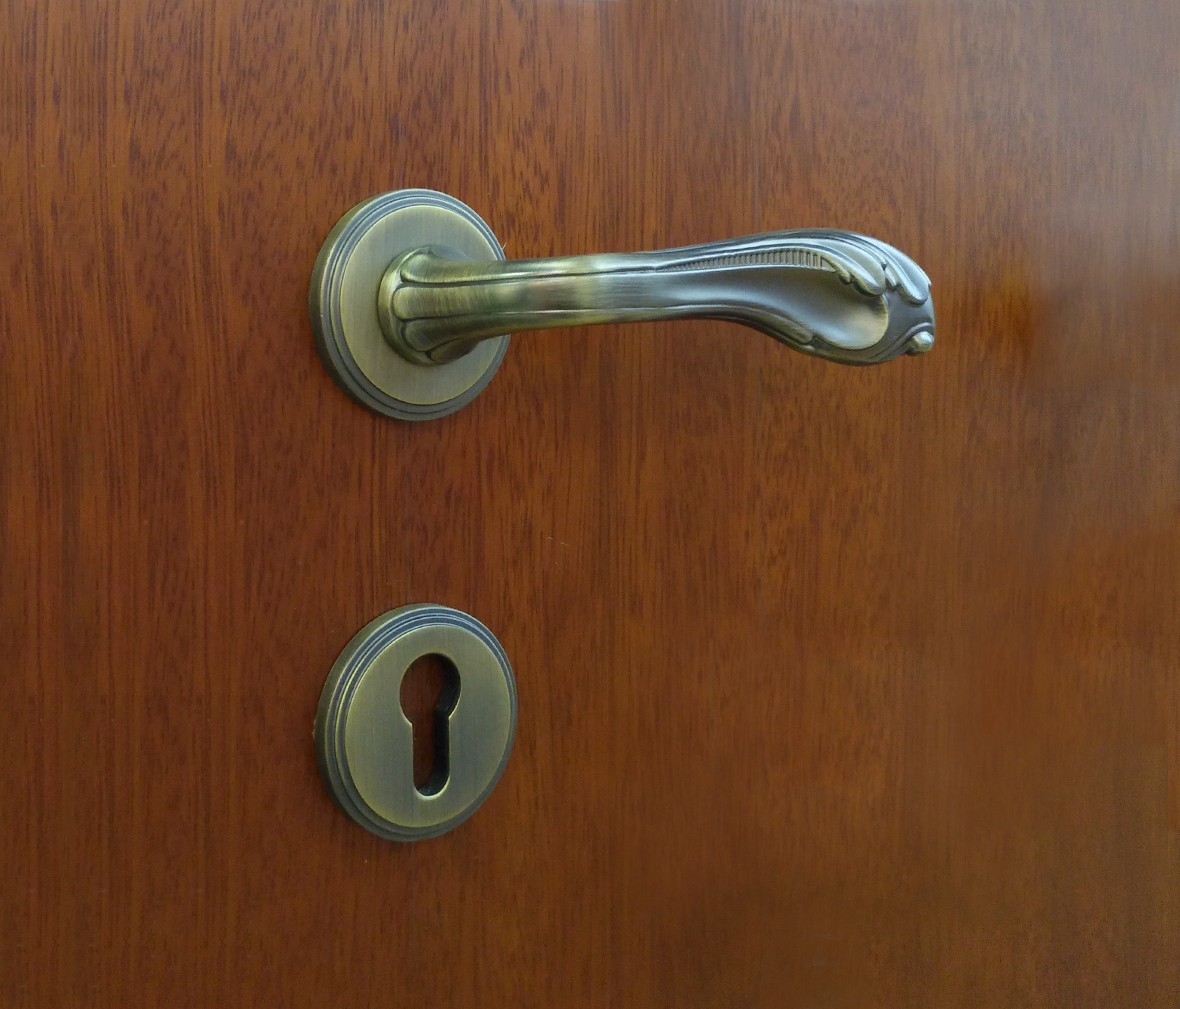 晾霸五金 米开朗705-555MAB型号门锁 锌合金材质 优质门锁 情景 细节